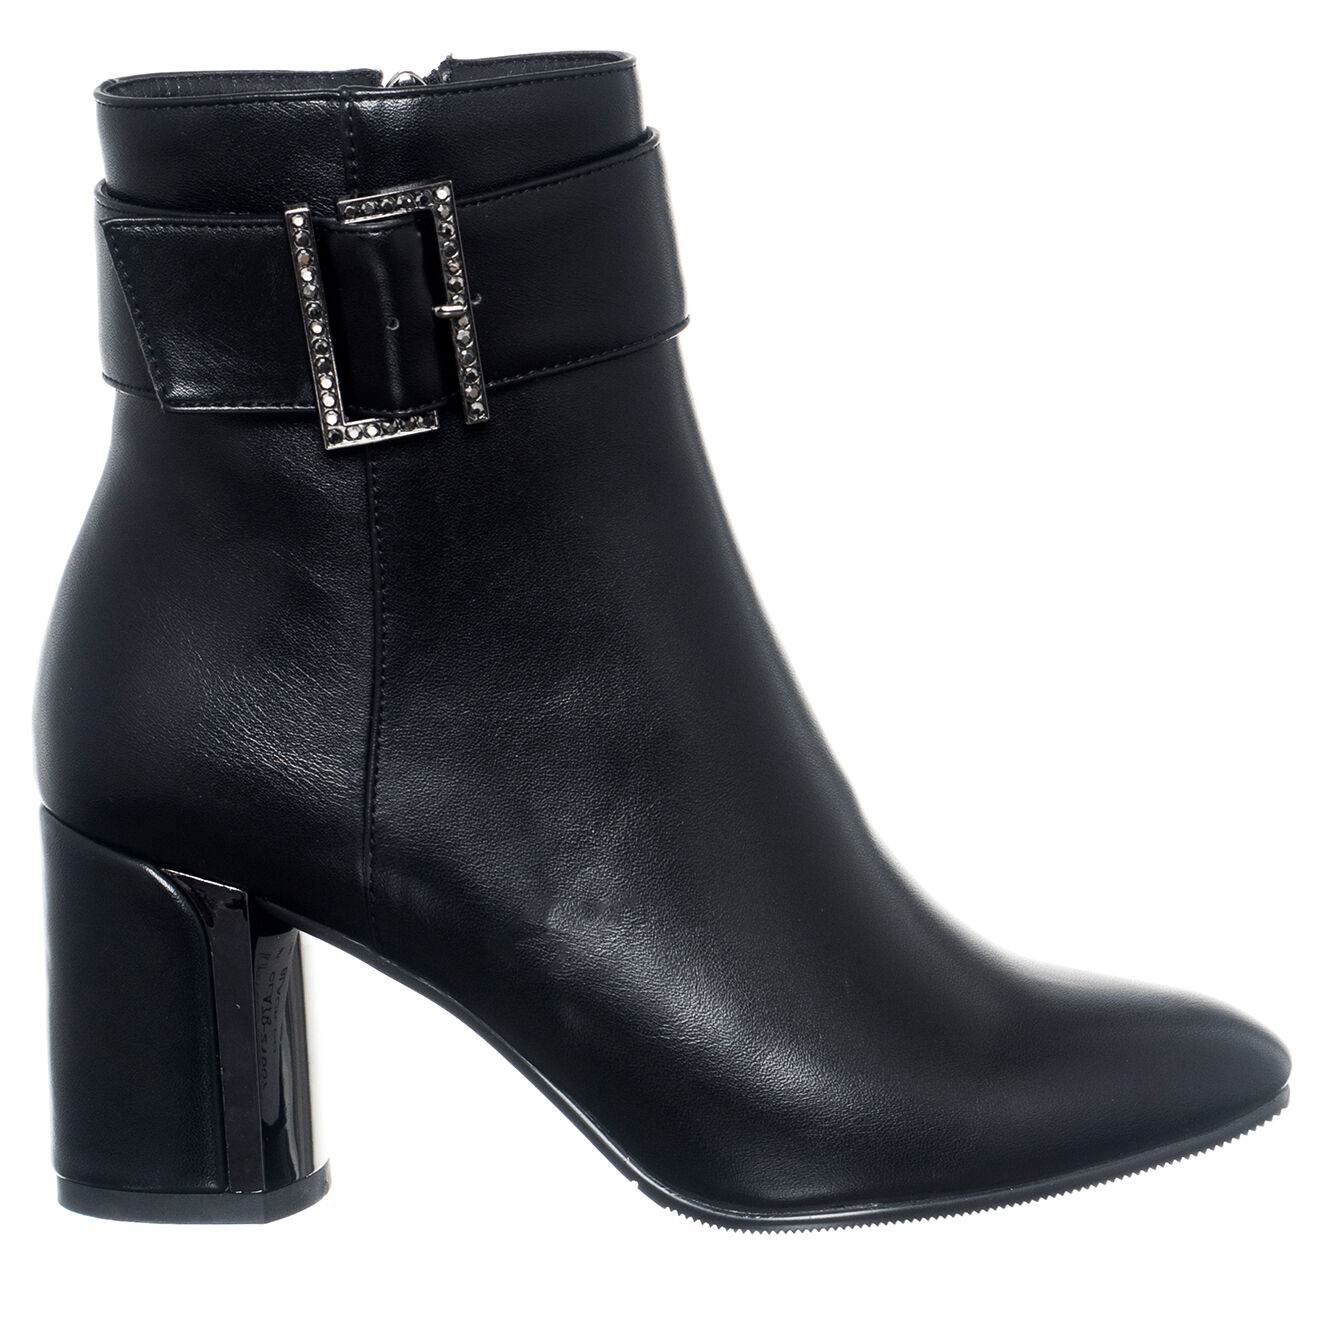 Boots Classy noires - Talon 7.5 cm